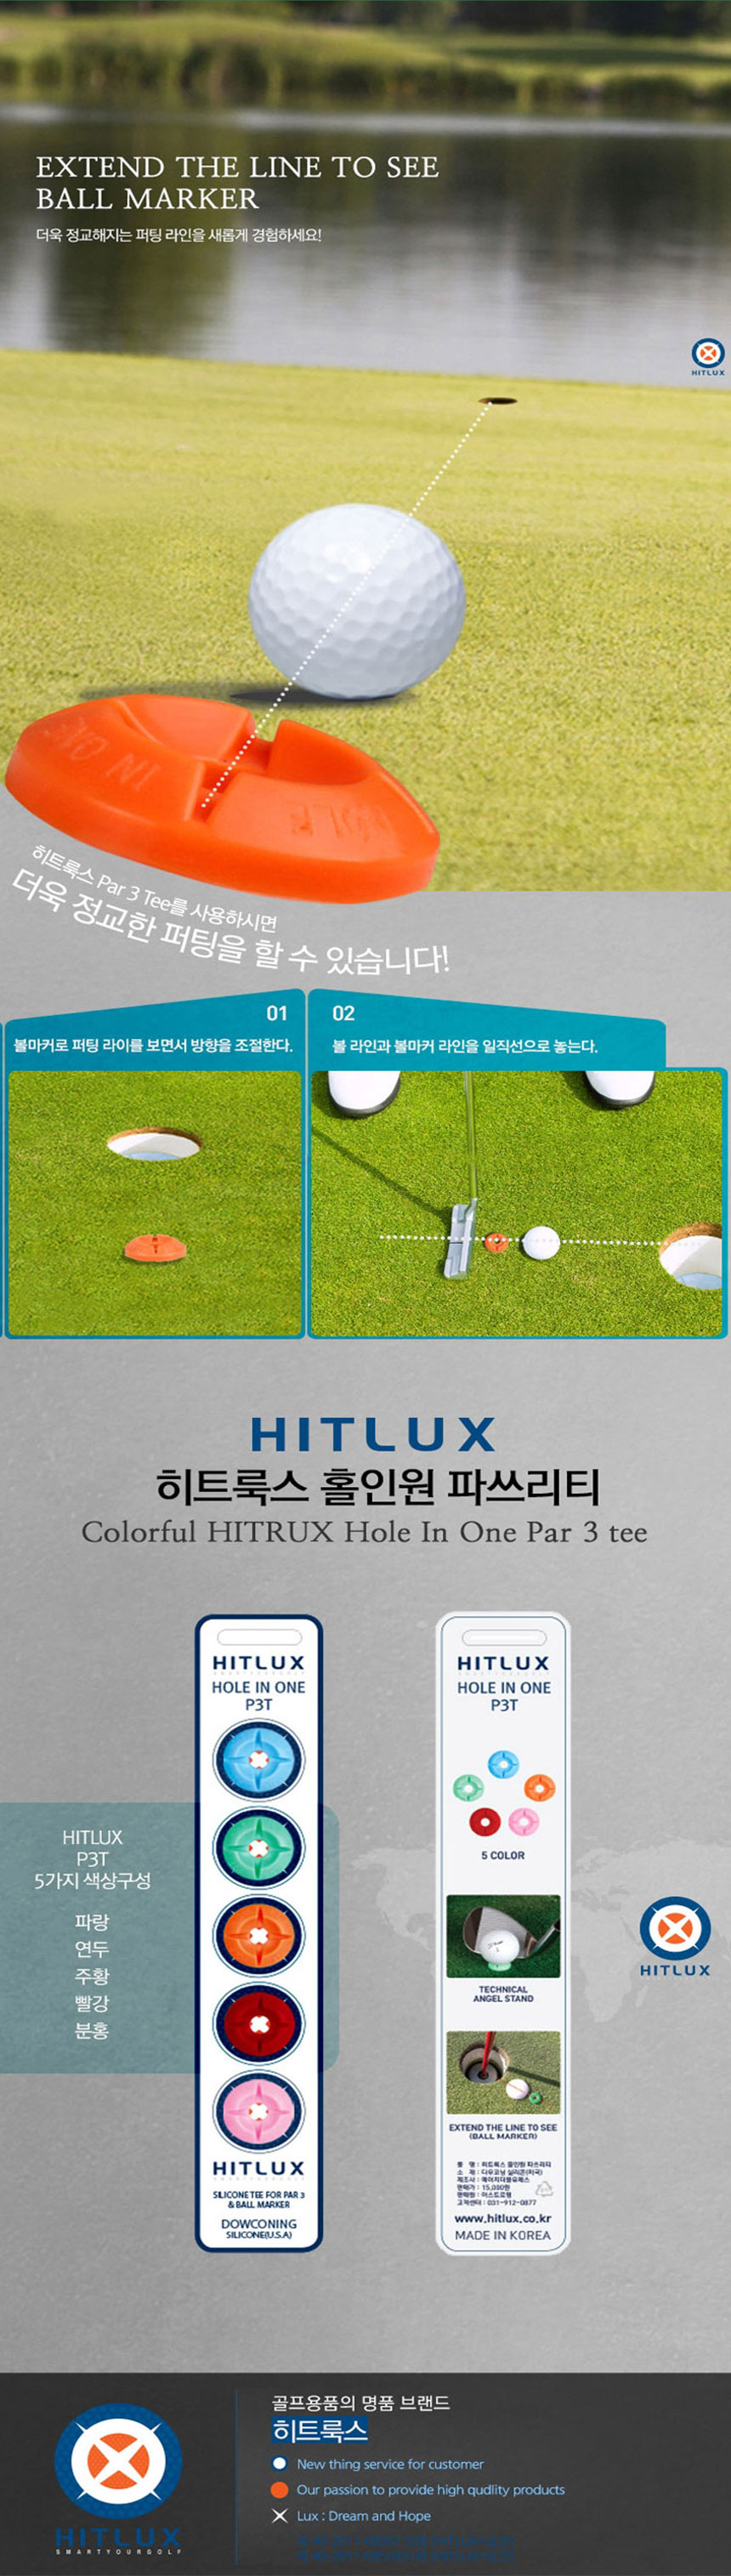 golf-tee-ball-maker-full-main-1-_07_131404.jpg